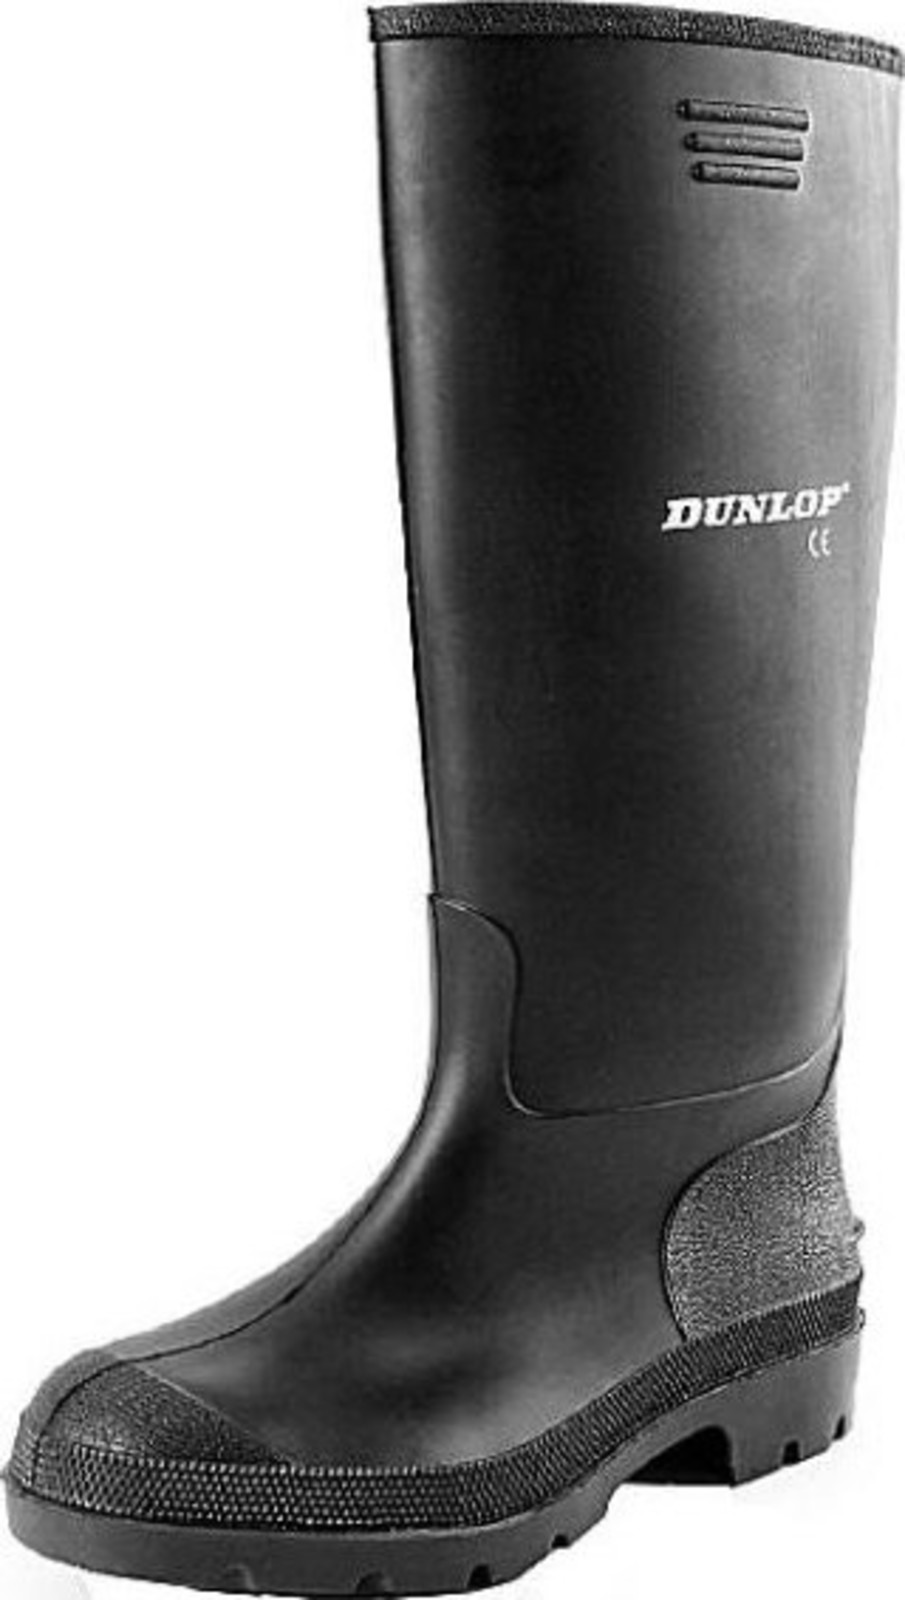 Gumáky Dunlop Preismeister PVC - veľkosť: 38, farba: čierna